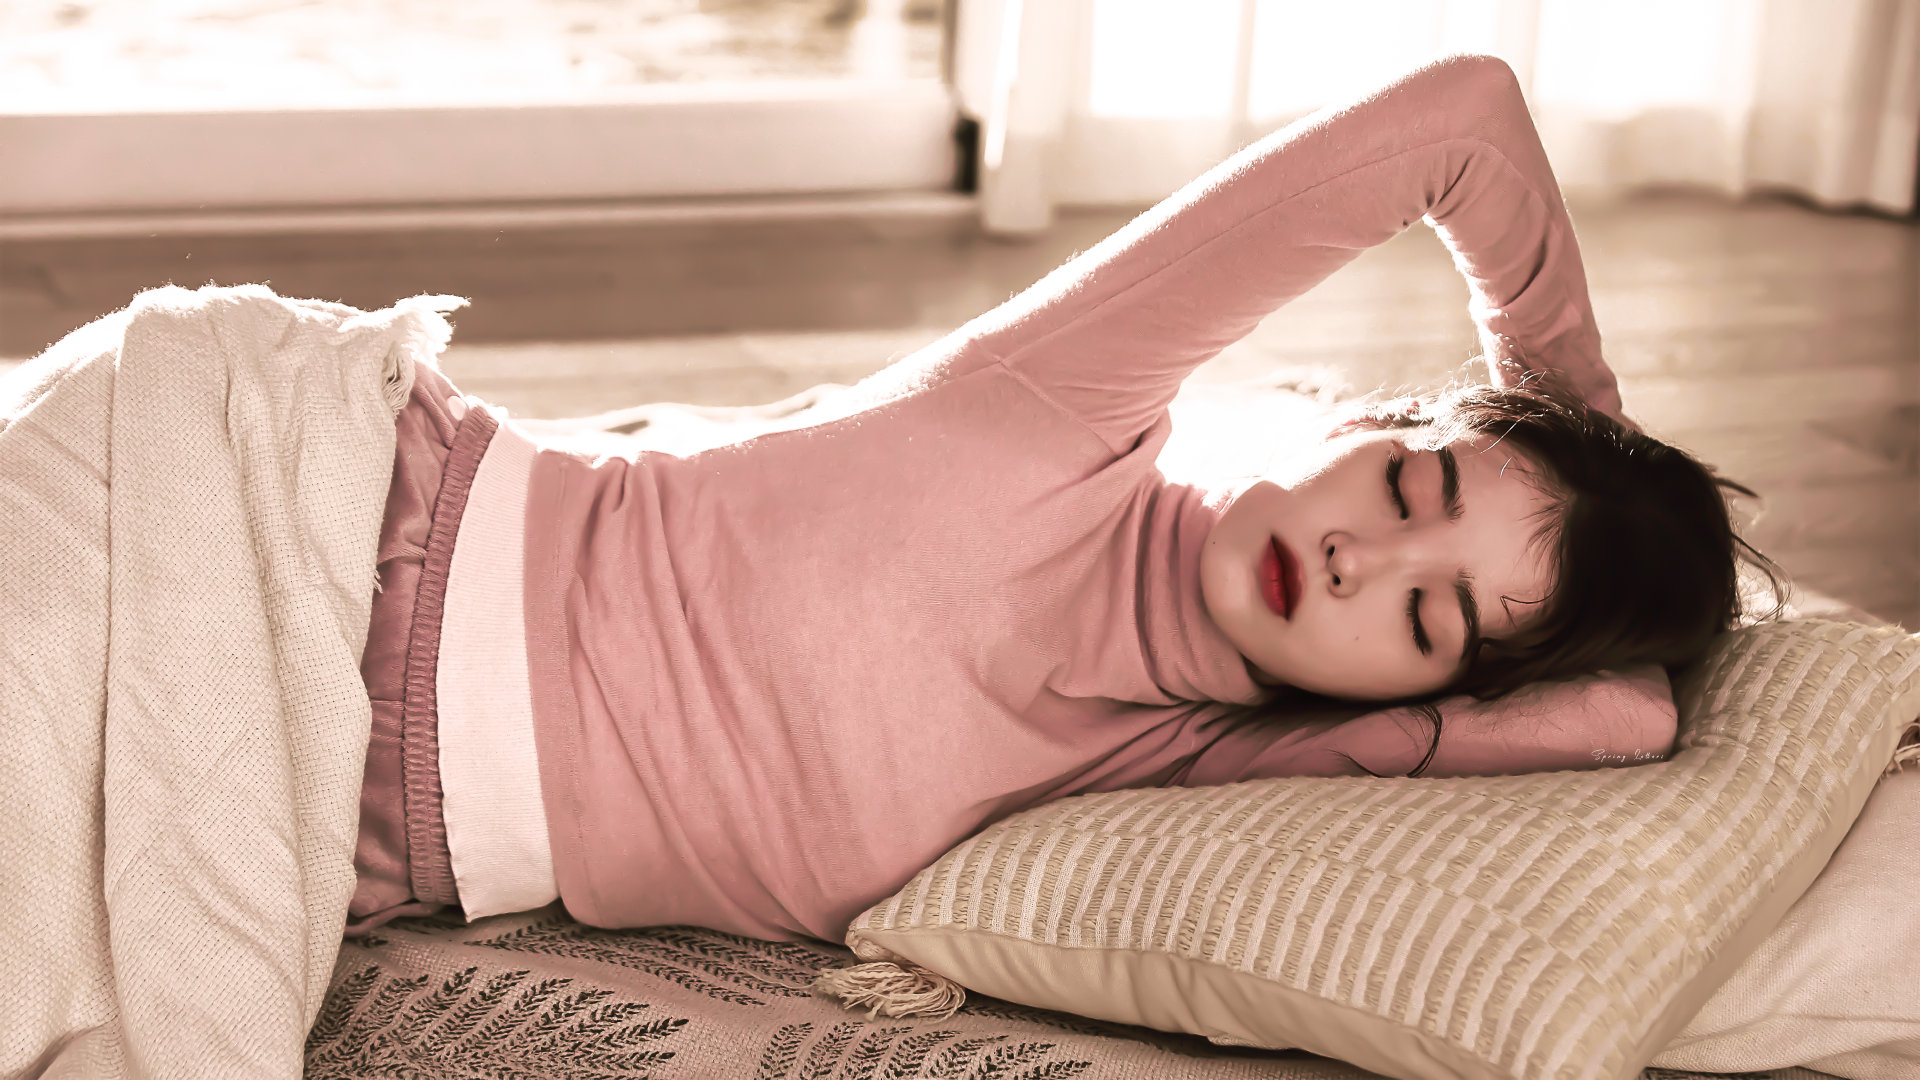 IU Iu Lee Ji Eun Women Pink Tops Relaxing 1920x1080